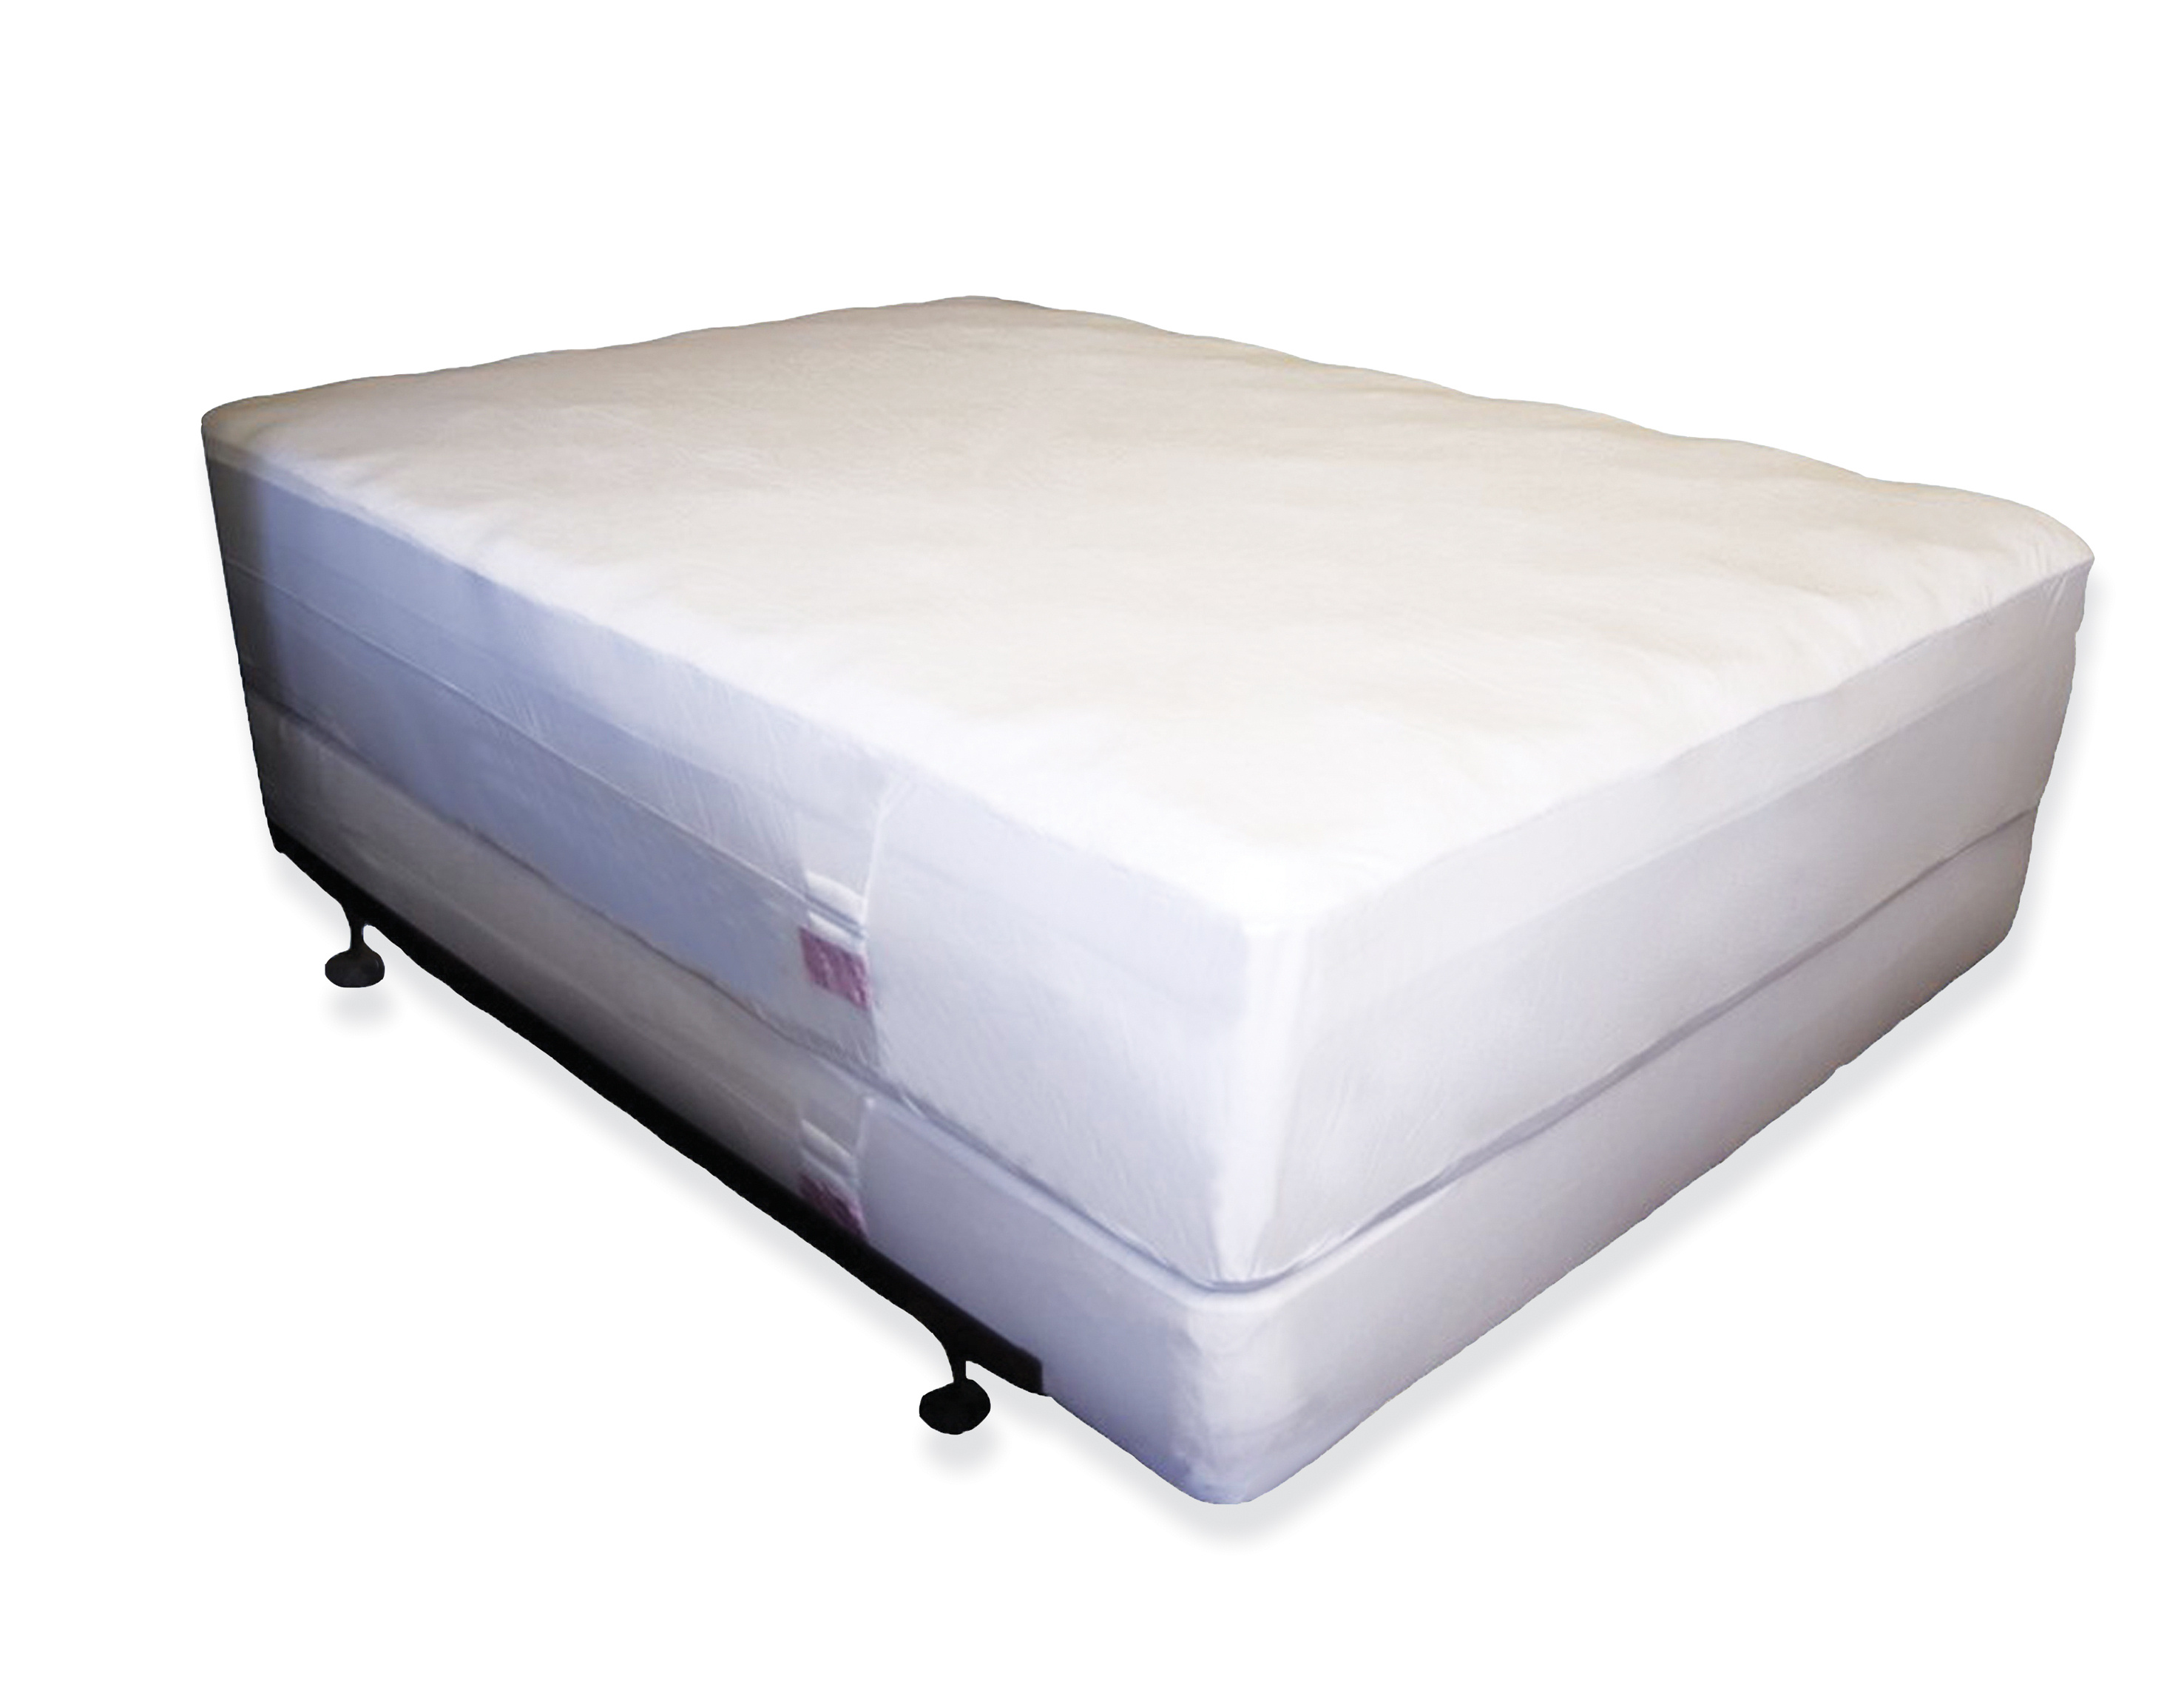 bed bug resistant mattress protectors